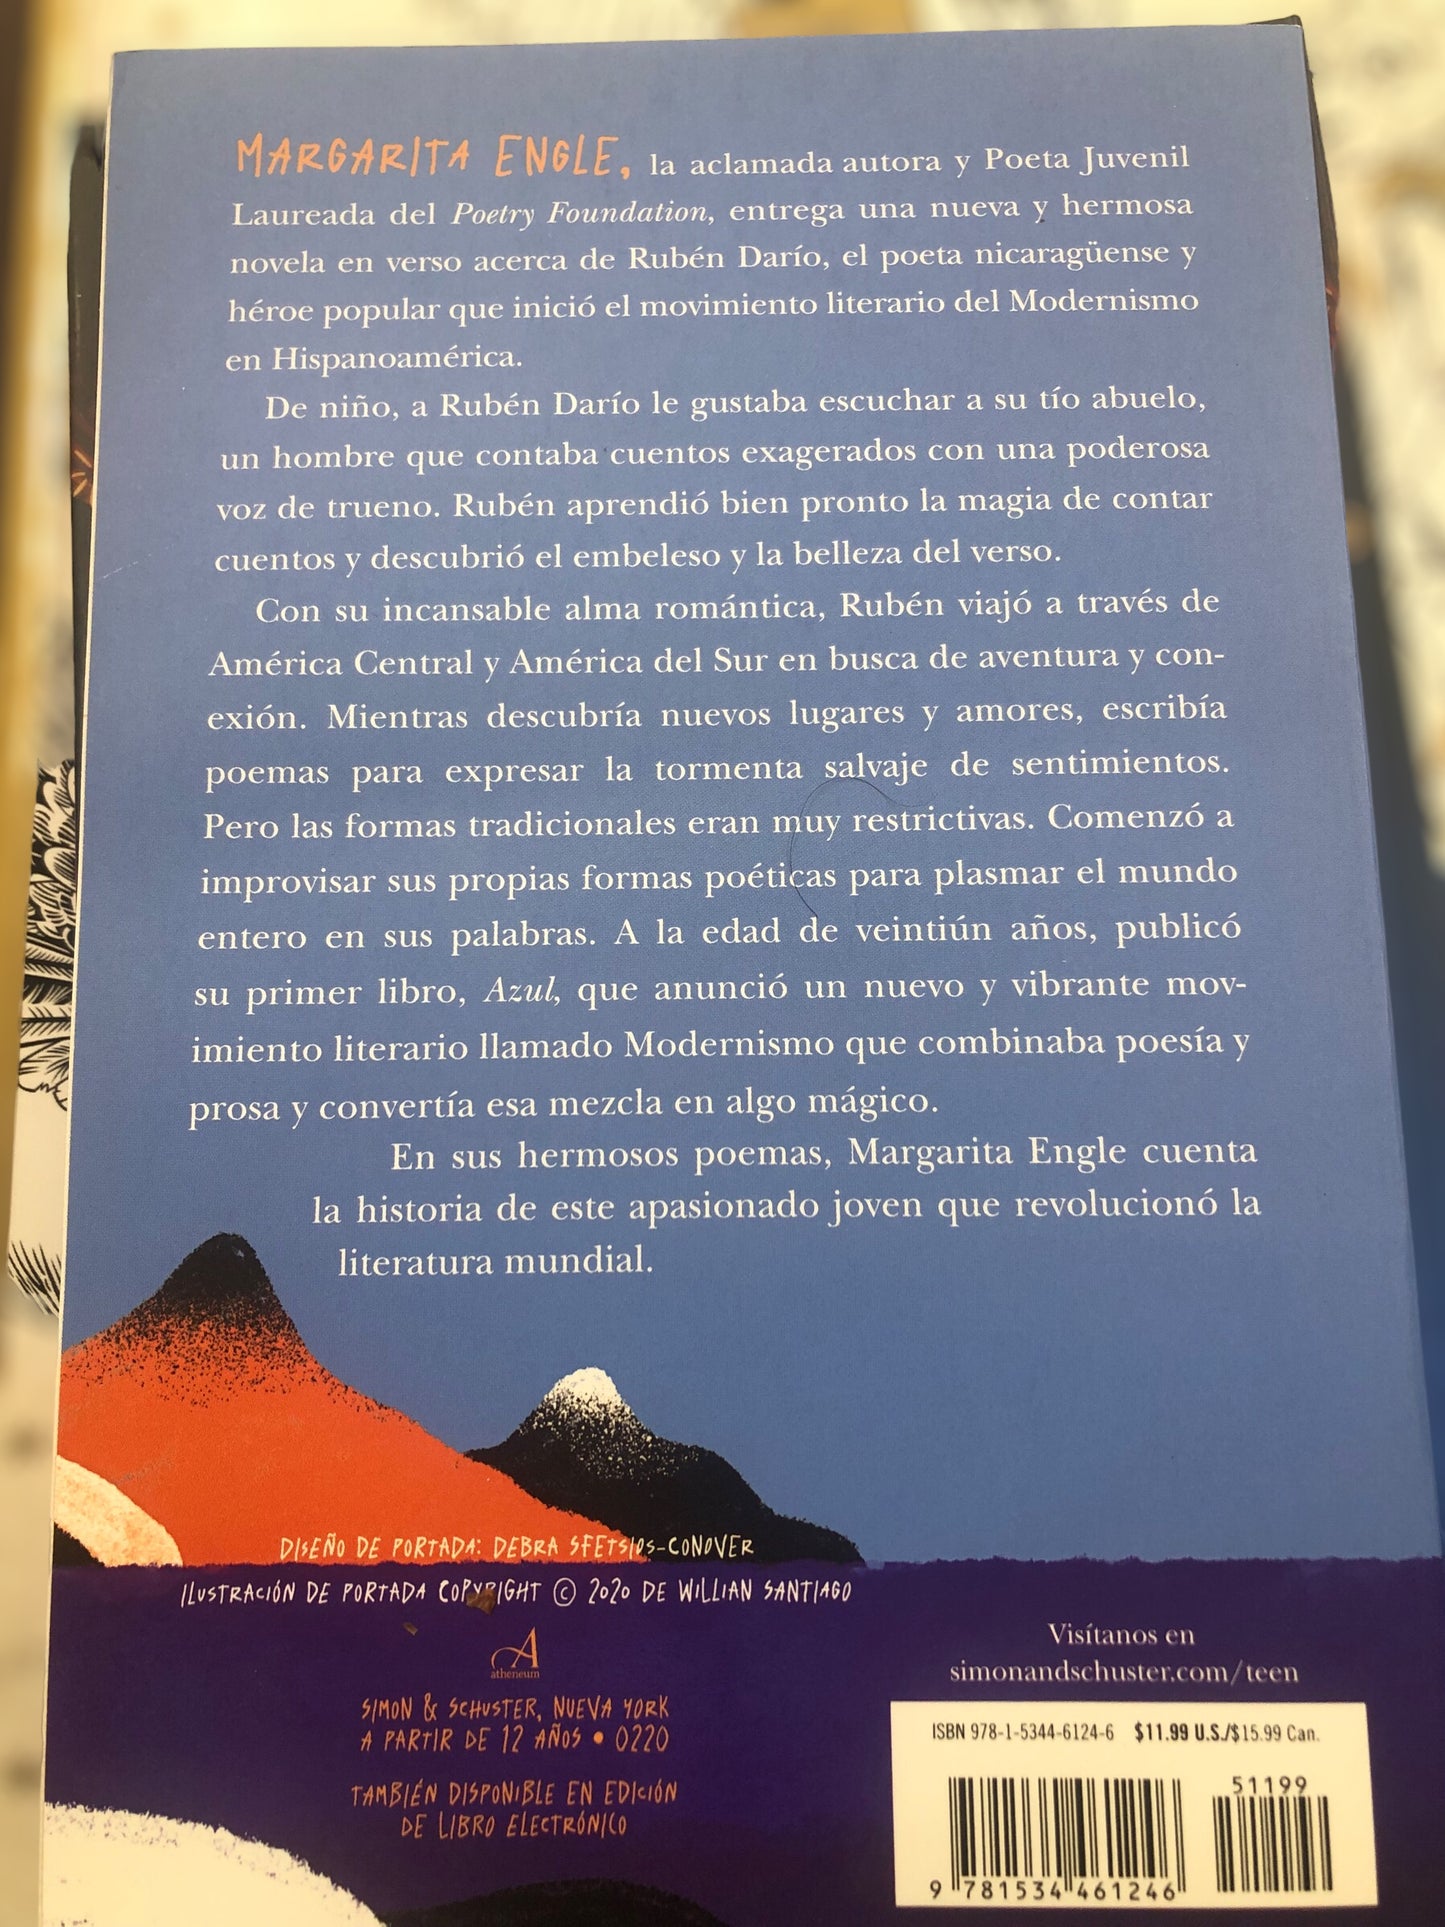 Con Una Estrella en la Mano:Rubén Darío por Margarita Engle (tapa blanda)